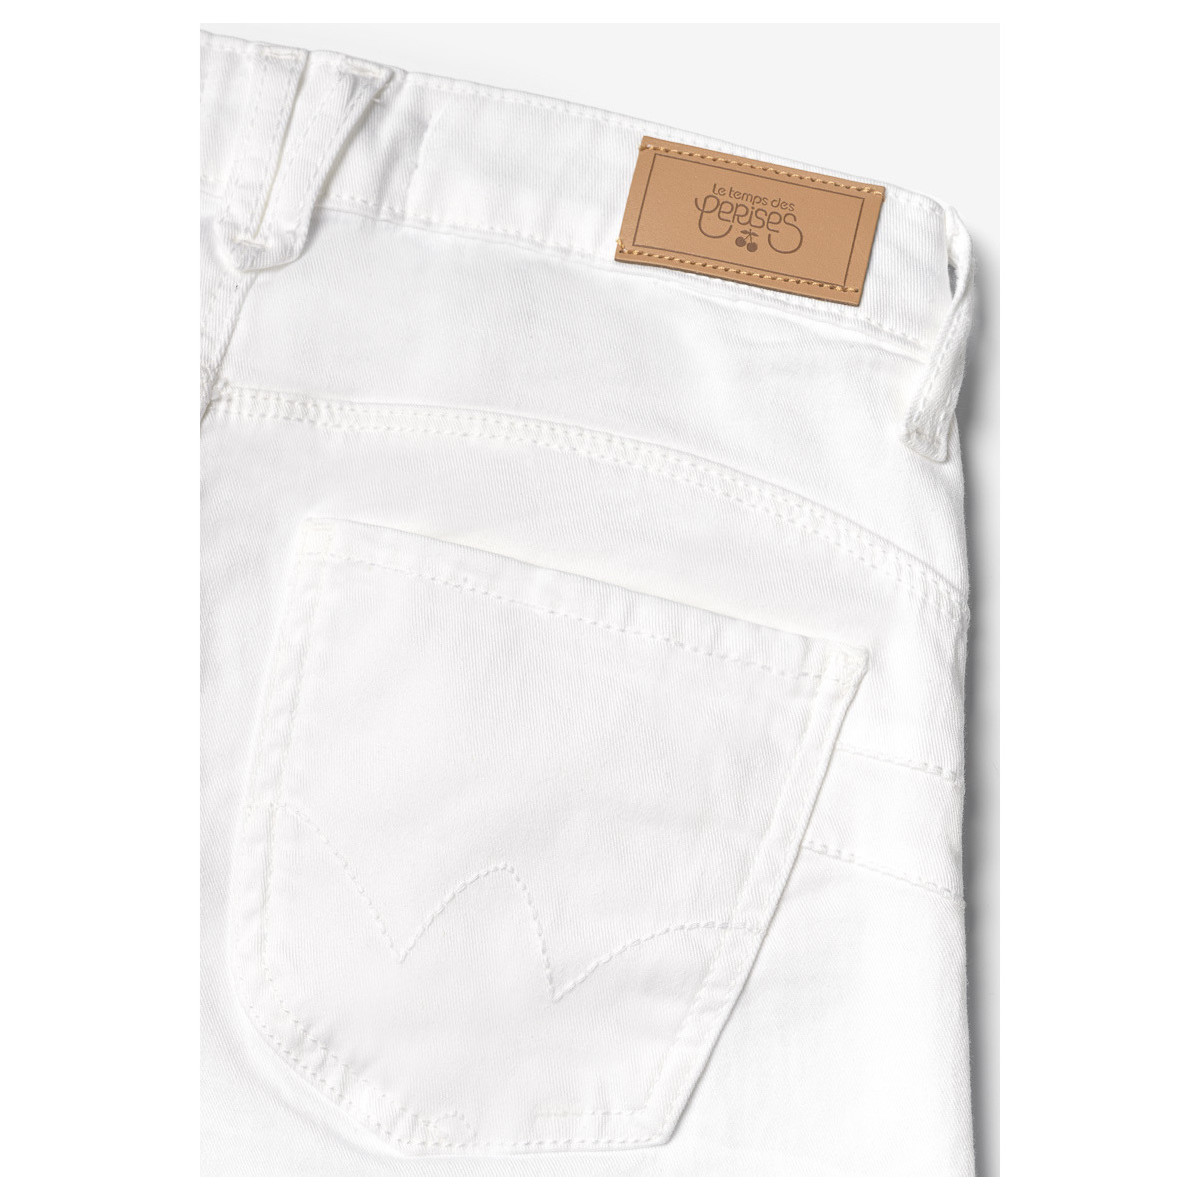 Le Temps des Cerises Blanc Pulp regular taille haute jeans blanc mwdXEjD3